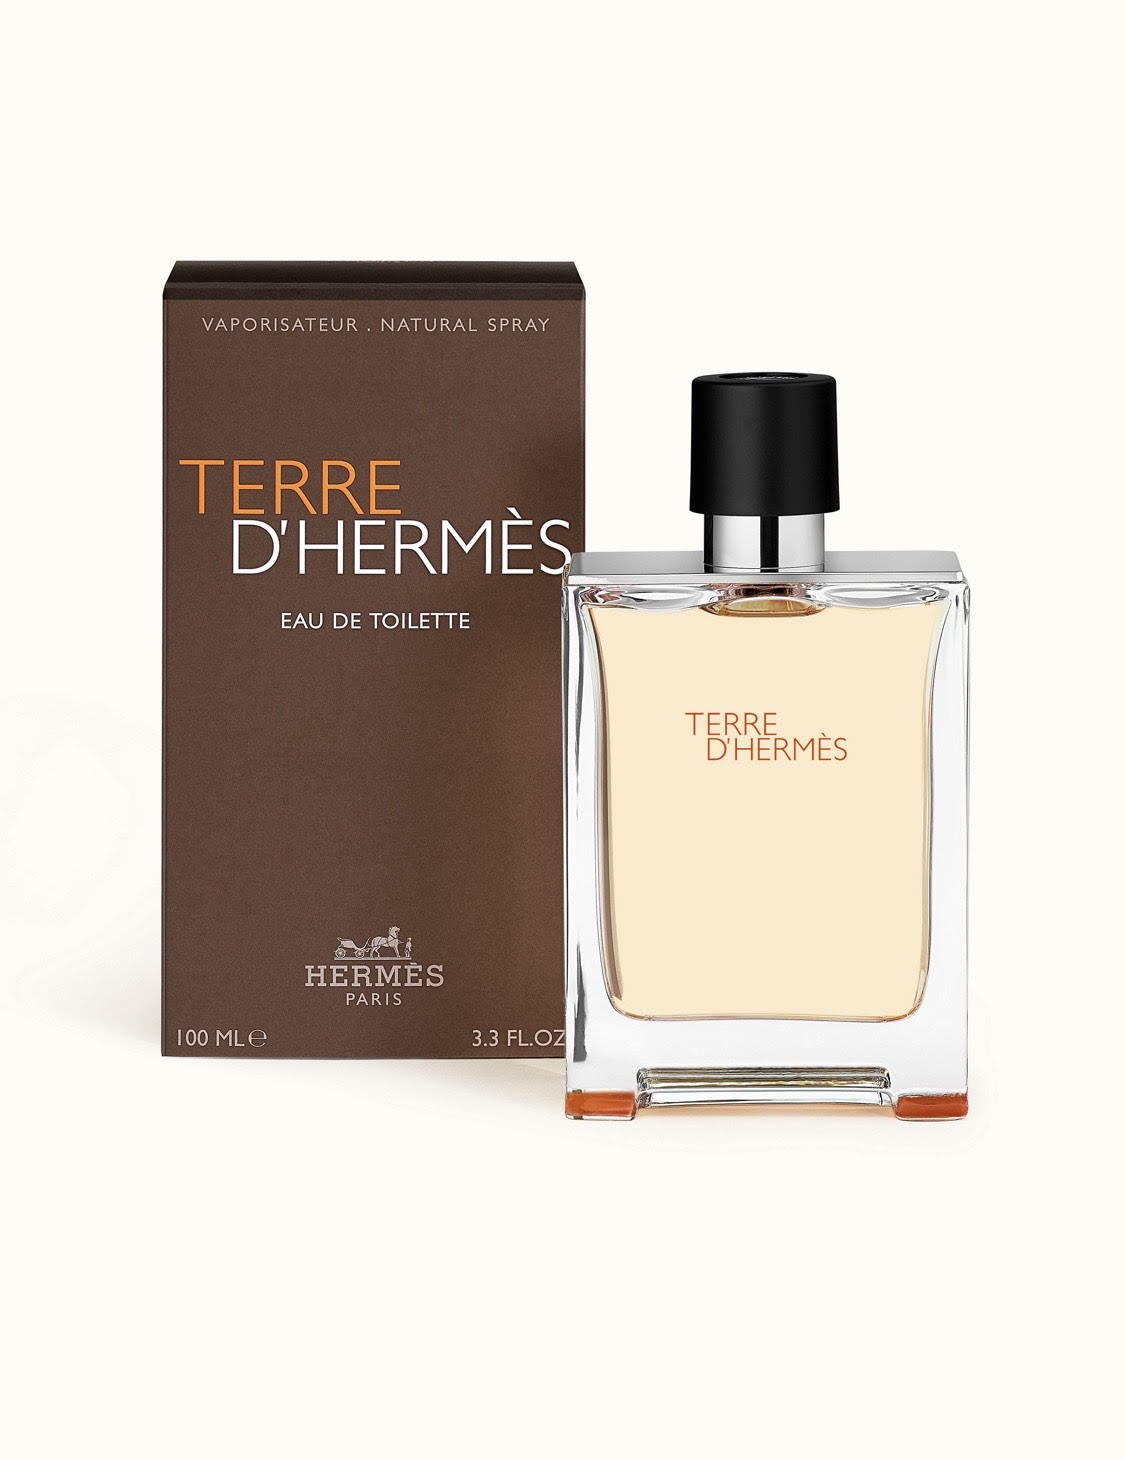 TERRE D'Hermes By Hermes Paris - theperfumestore.lk